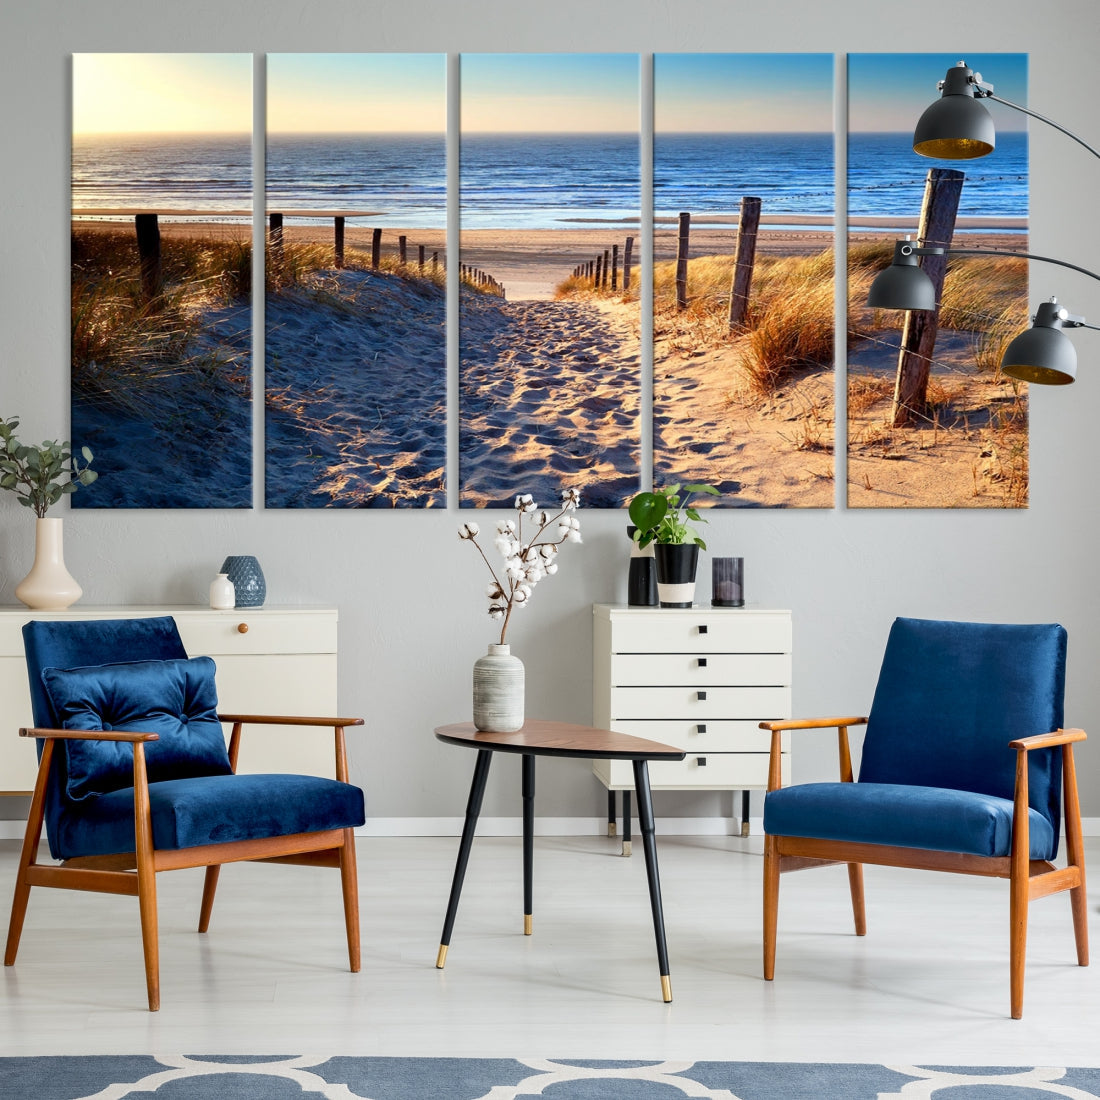 Ocean Beach Sea Canvas Wall Art Print